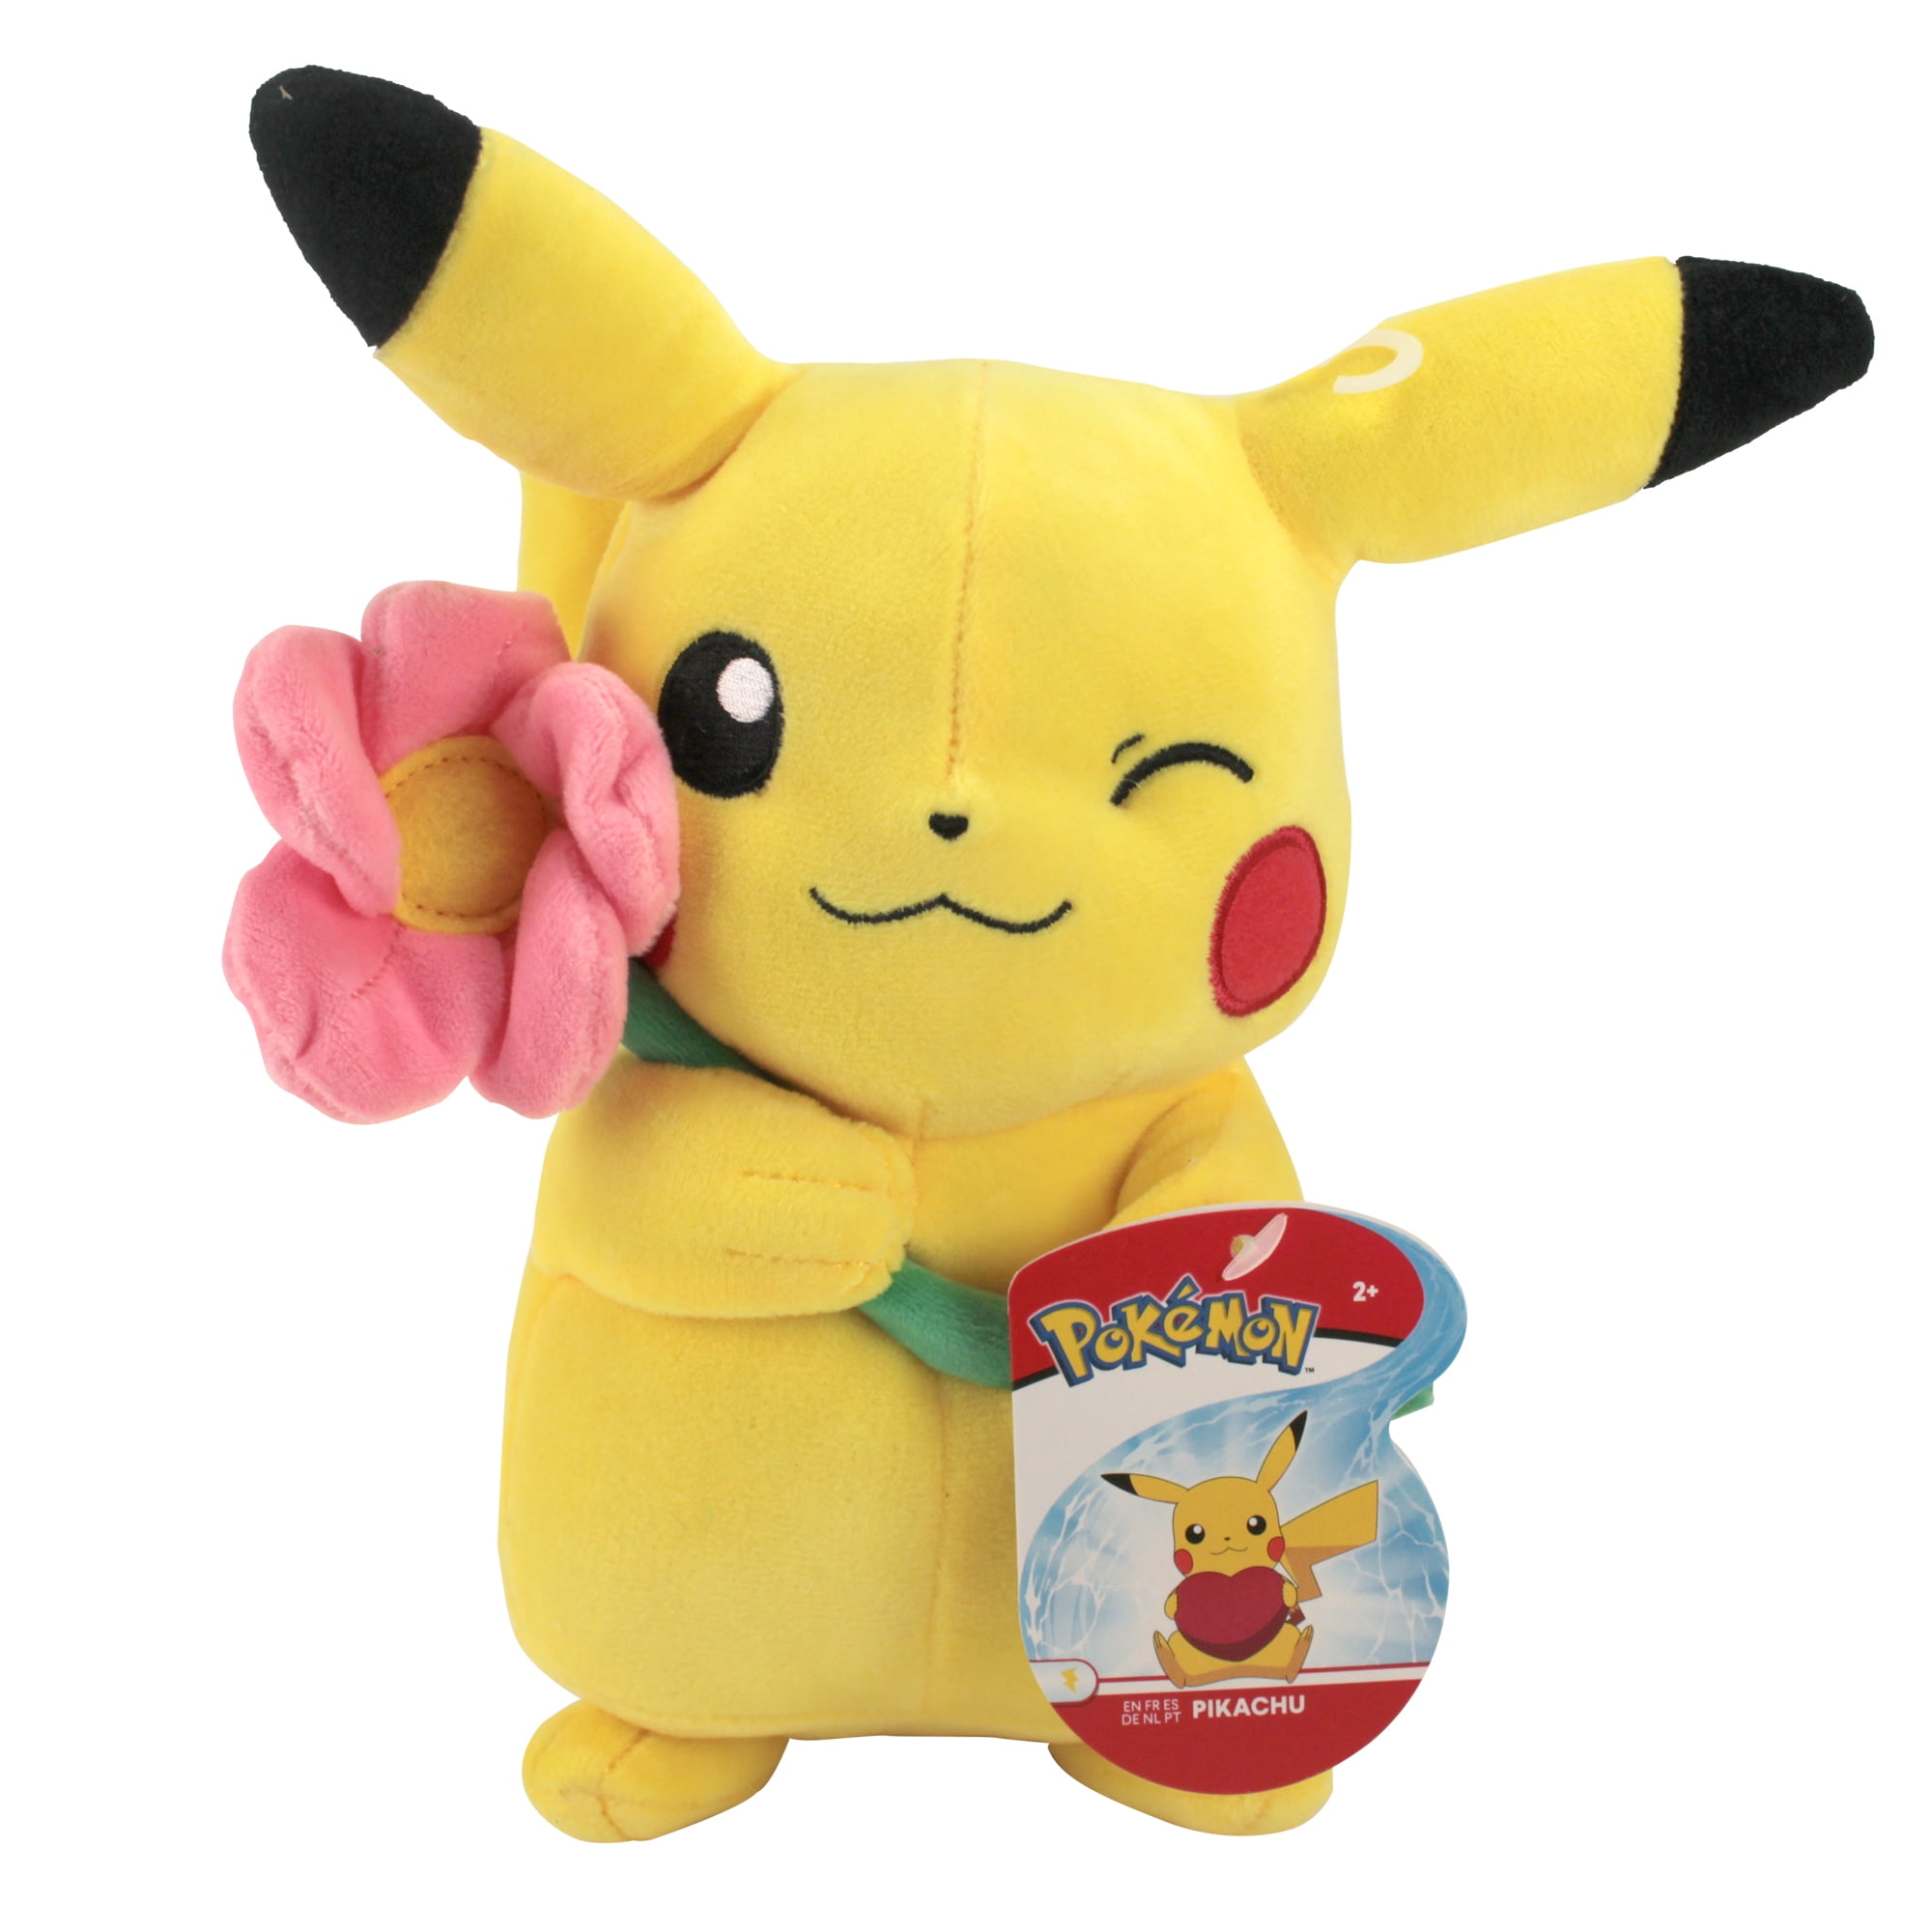 Laugh Pikachu Pokemon Plush Toy Stuffed Animal Soft figure Doll 5" 